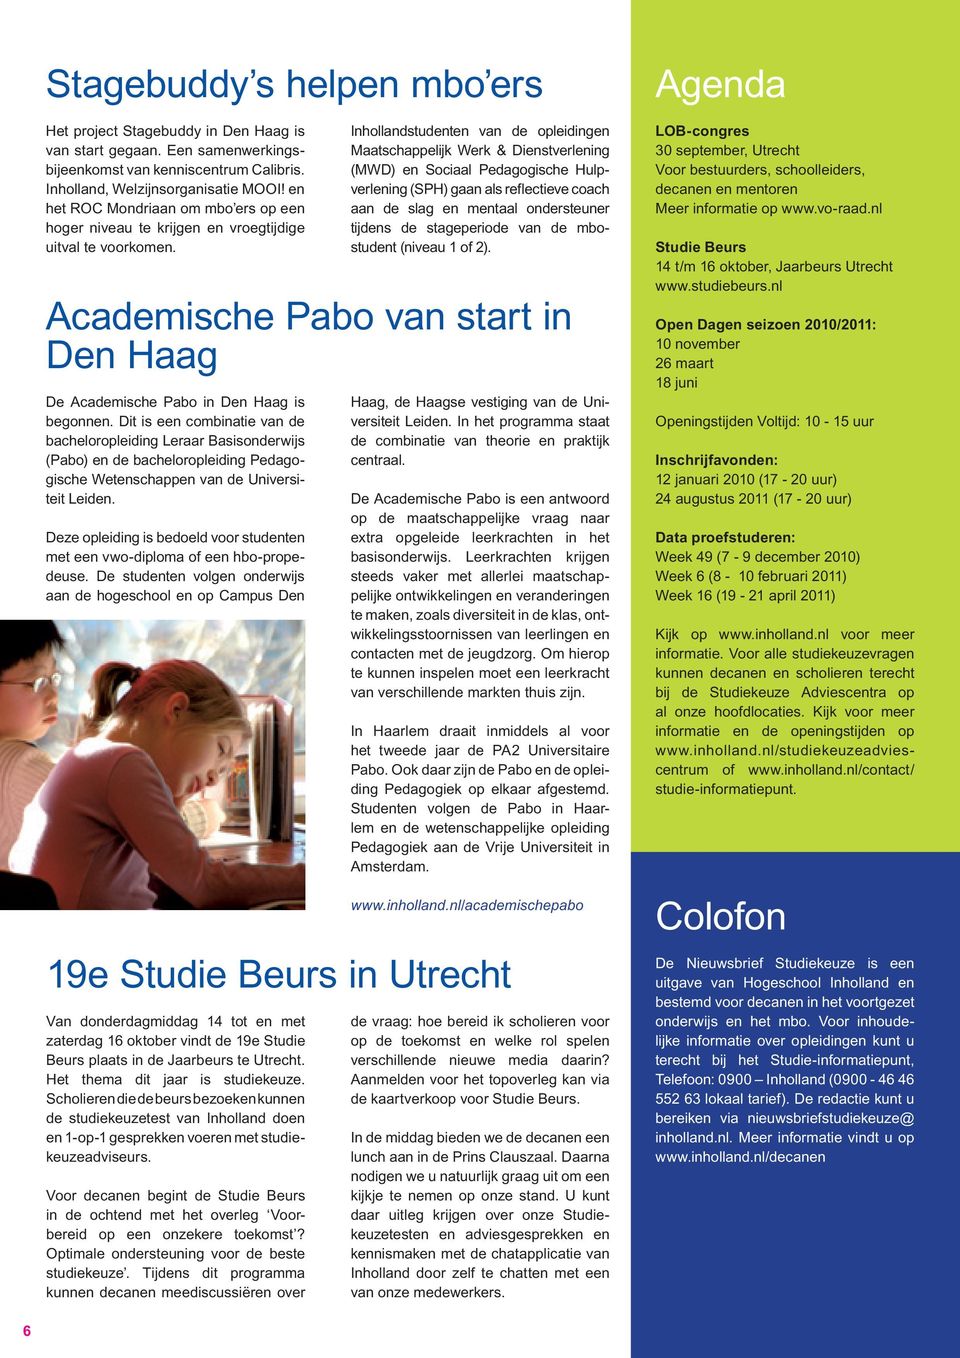 Van donderdagmiddag 14 tot en met zaterdag 16 oktober vindt de 19e Studie Beurs plaats in de Jaarbeurs te Utrecht. Het thema dit jaar is studiekeuze.